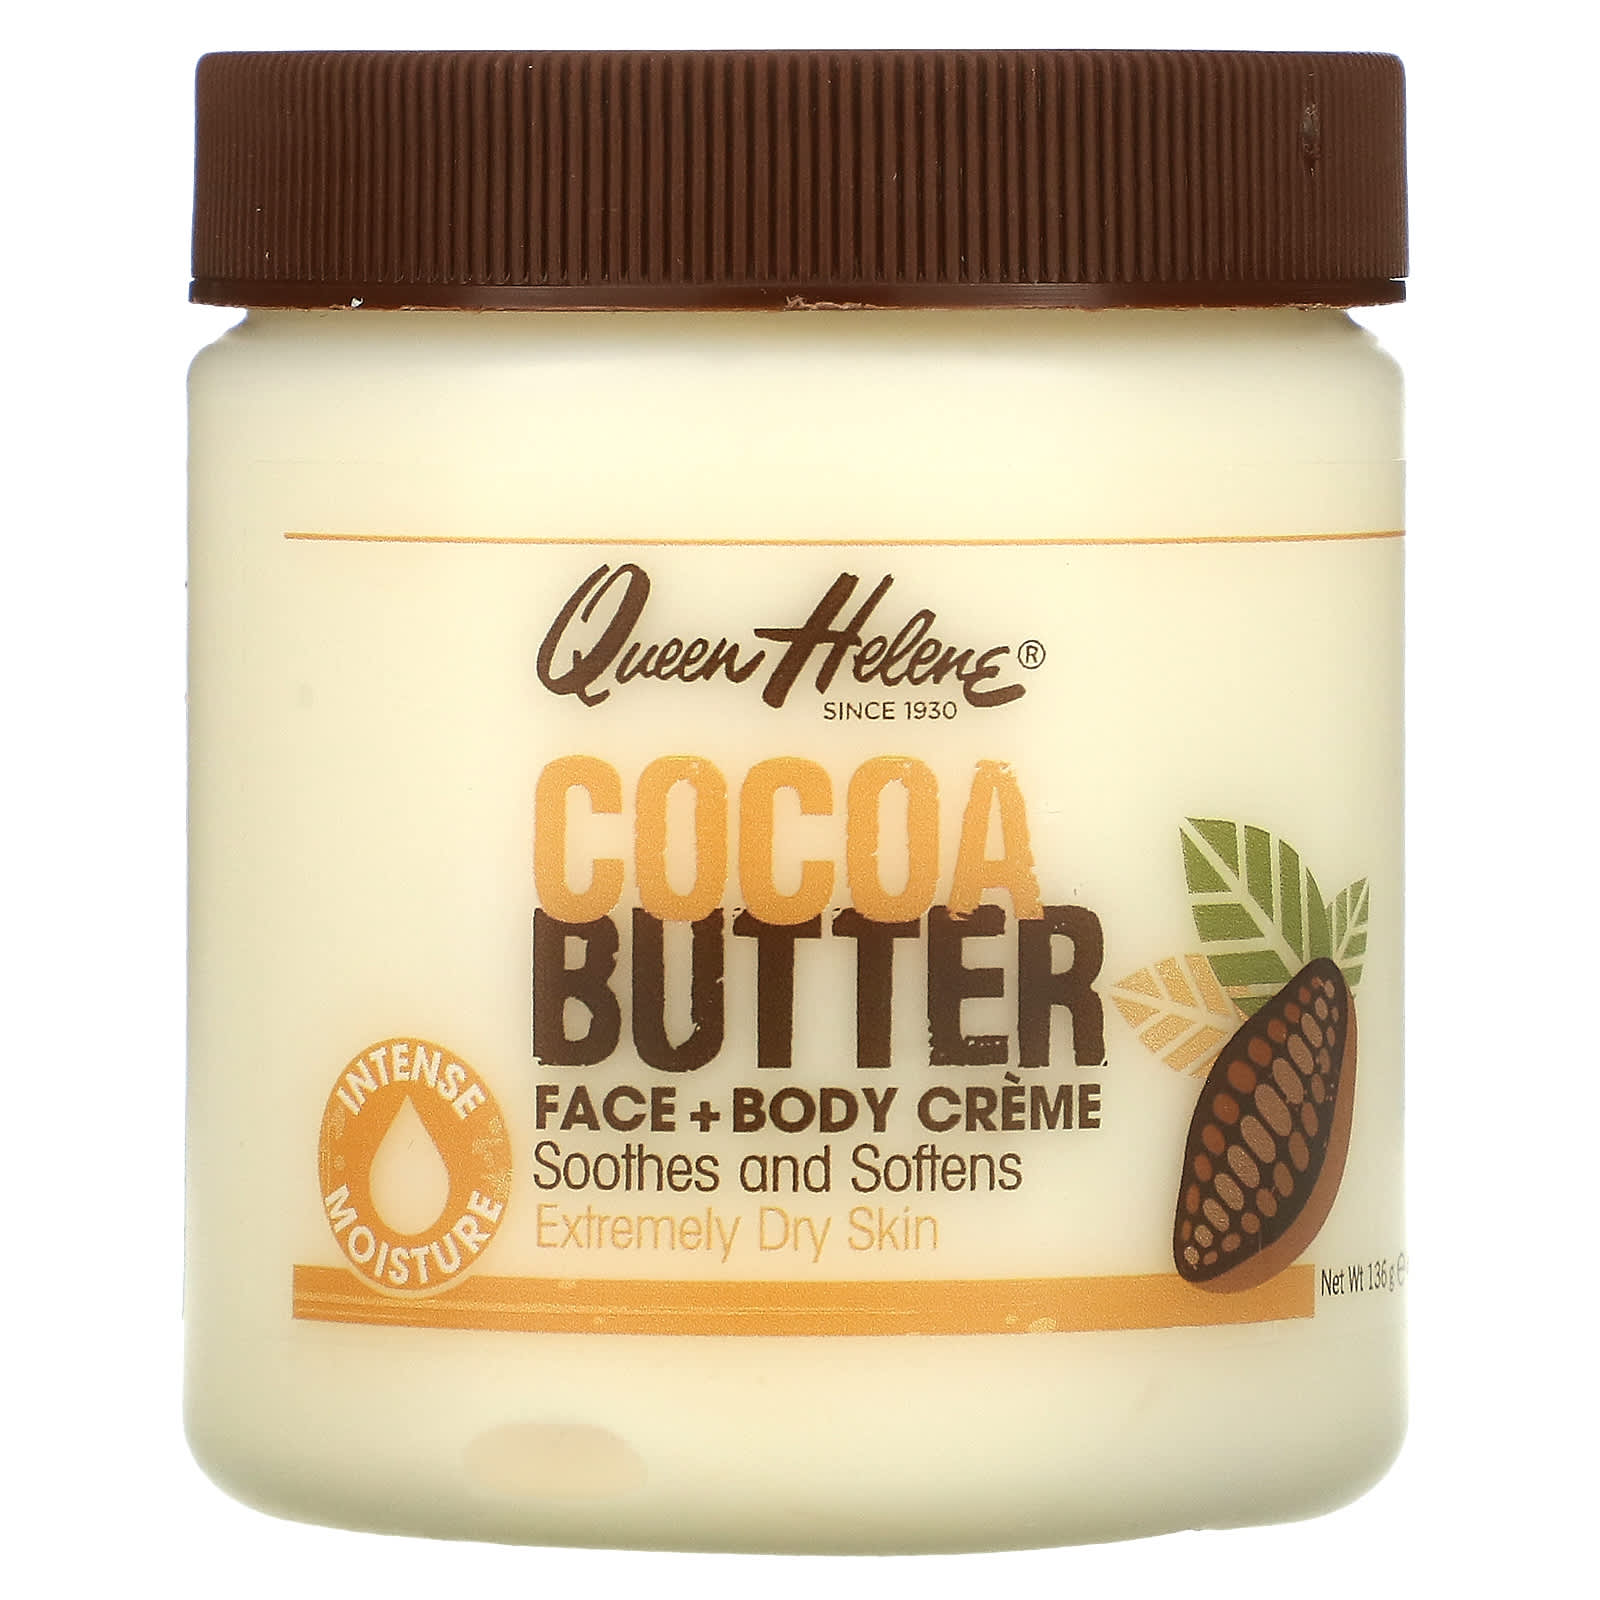 bericht Gewoon doen Botsing Queen Helene, Cocoa Butter Face + Body Creme, 4.8 oz (136 g)